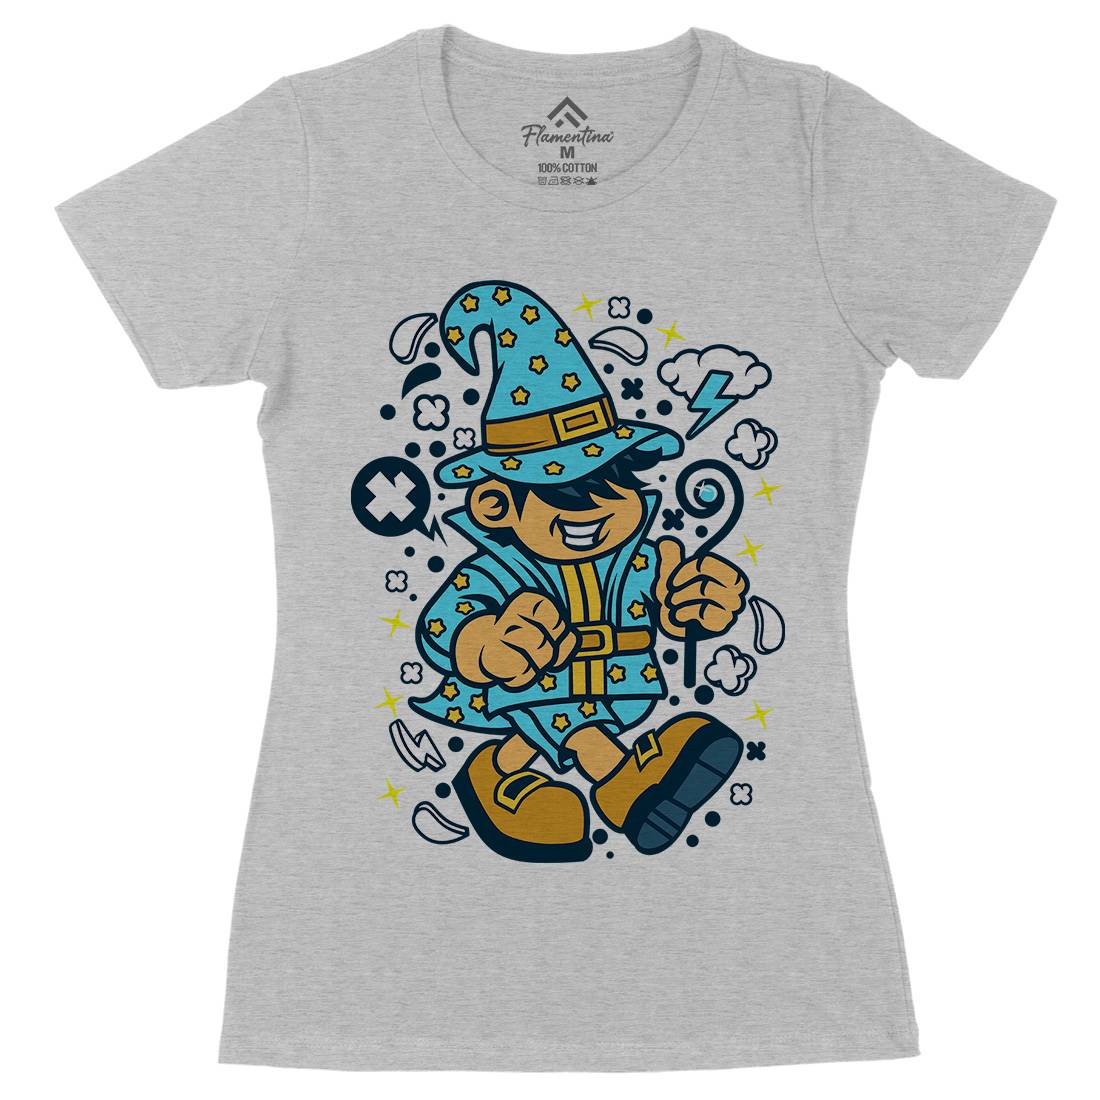 Wizard Kid Womens Organic Crew Neck T-Shirt Retro C691